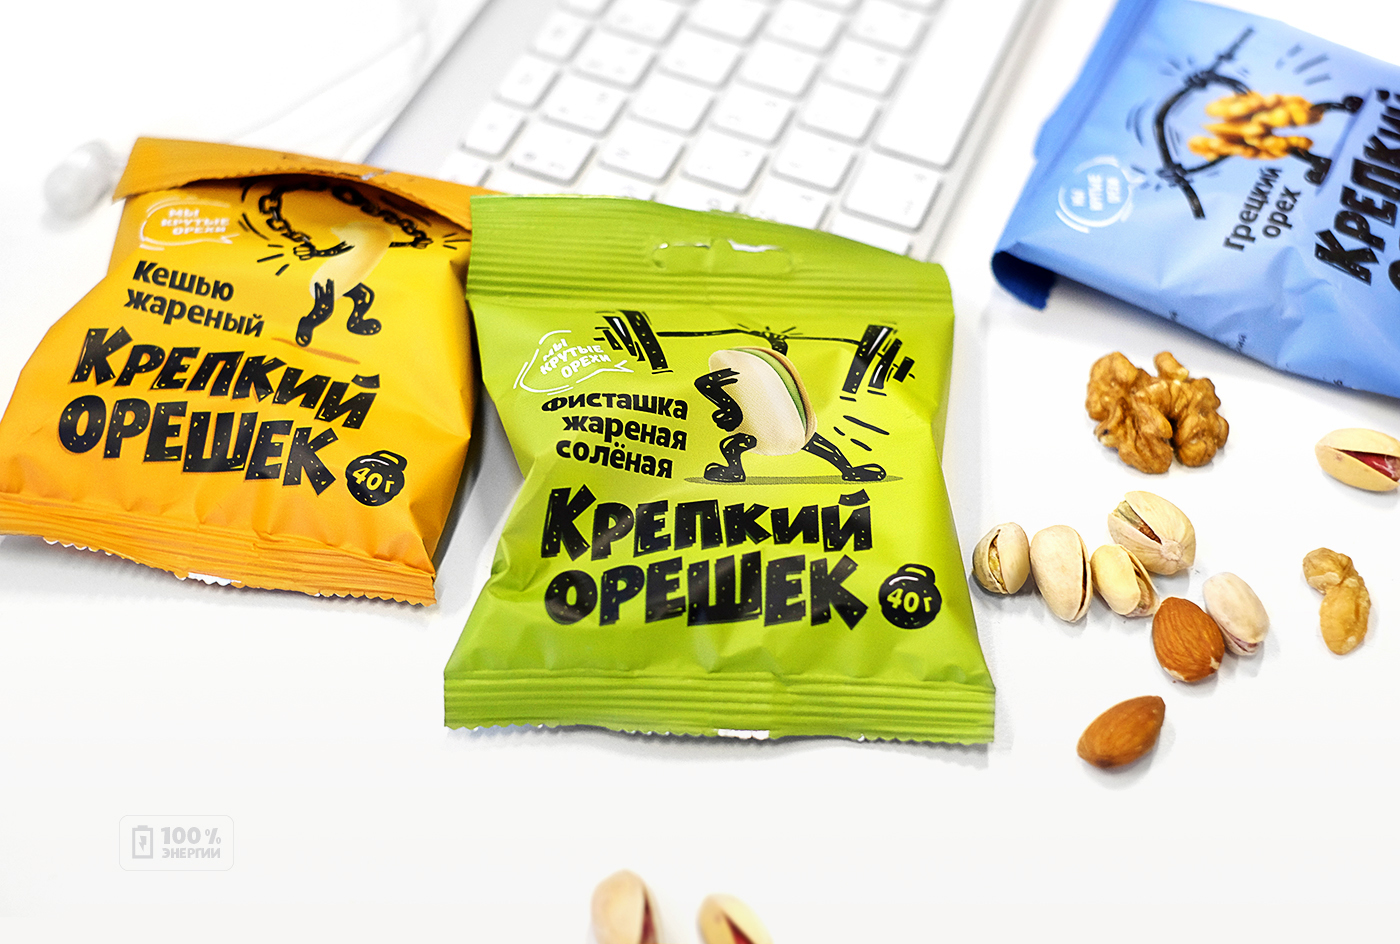 дизайн упаковки крепкий орешек орехи Силач правильное питание package design  nuts snack strongman healthy lifestyle